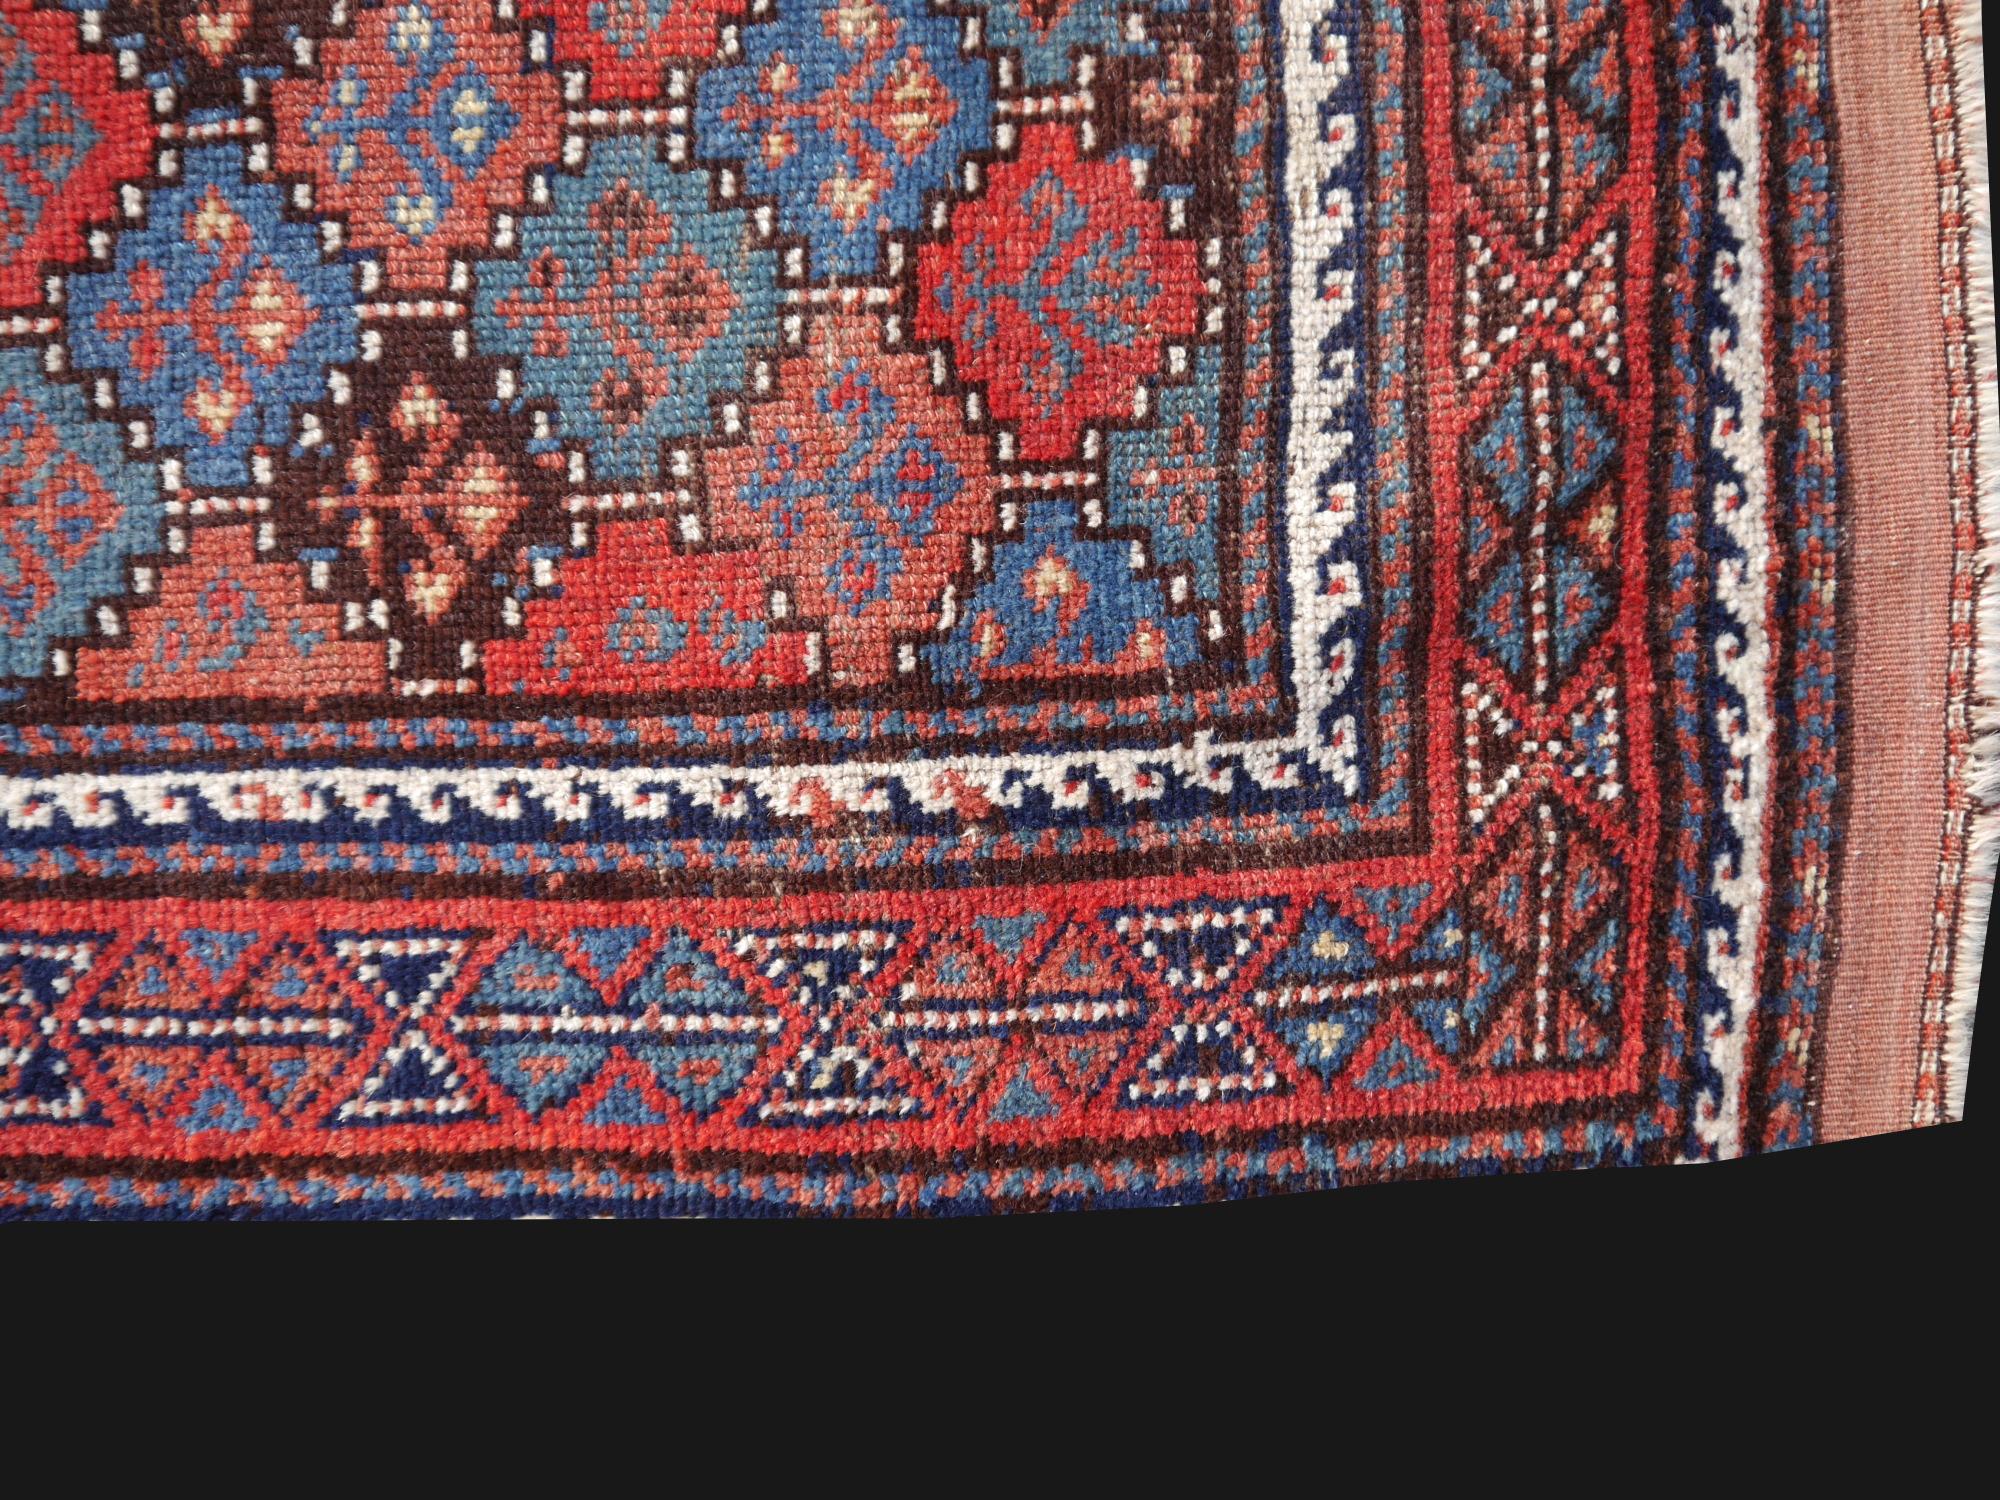 Antiker kaukasischer Teppich.

Ein schöner antiker Teppich aus Aserbaidschan. 
- • Schöne Farben
- • Alle handgefertigt
- • Flor Schurwolle
- • Traditionelles Design
- • Zustand: Sehr gut, Wollflor auf Wollkett- und -schuß.

Alle unsere Teppiche und